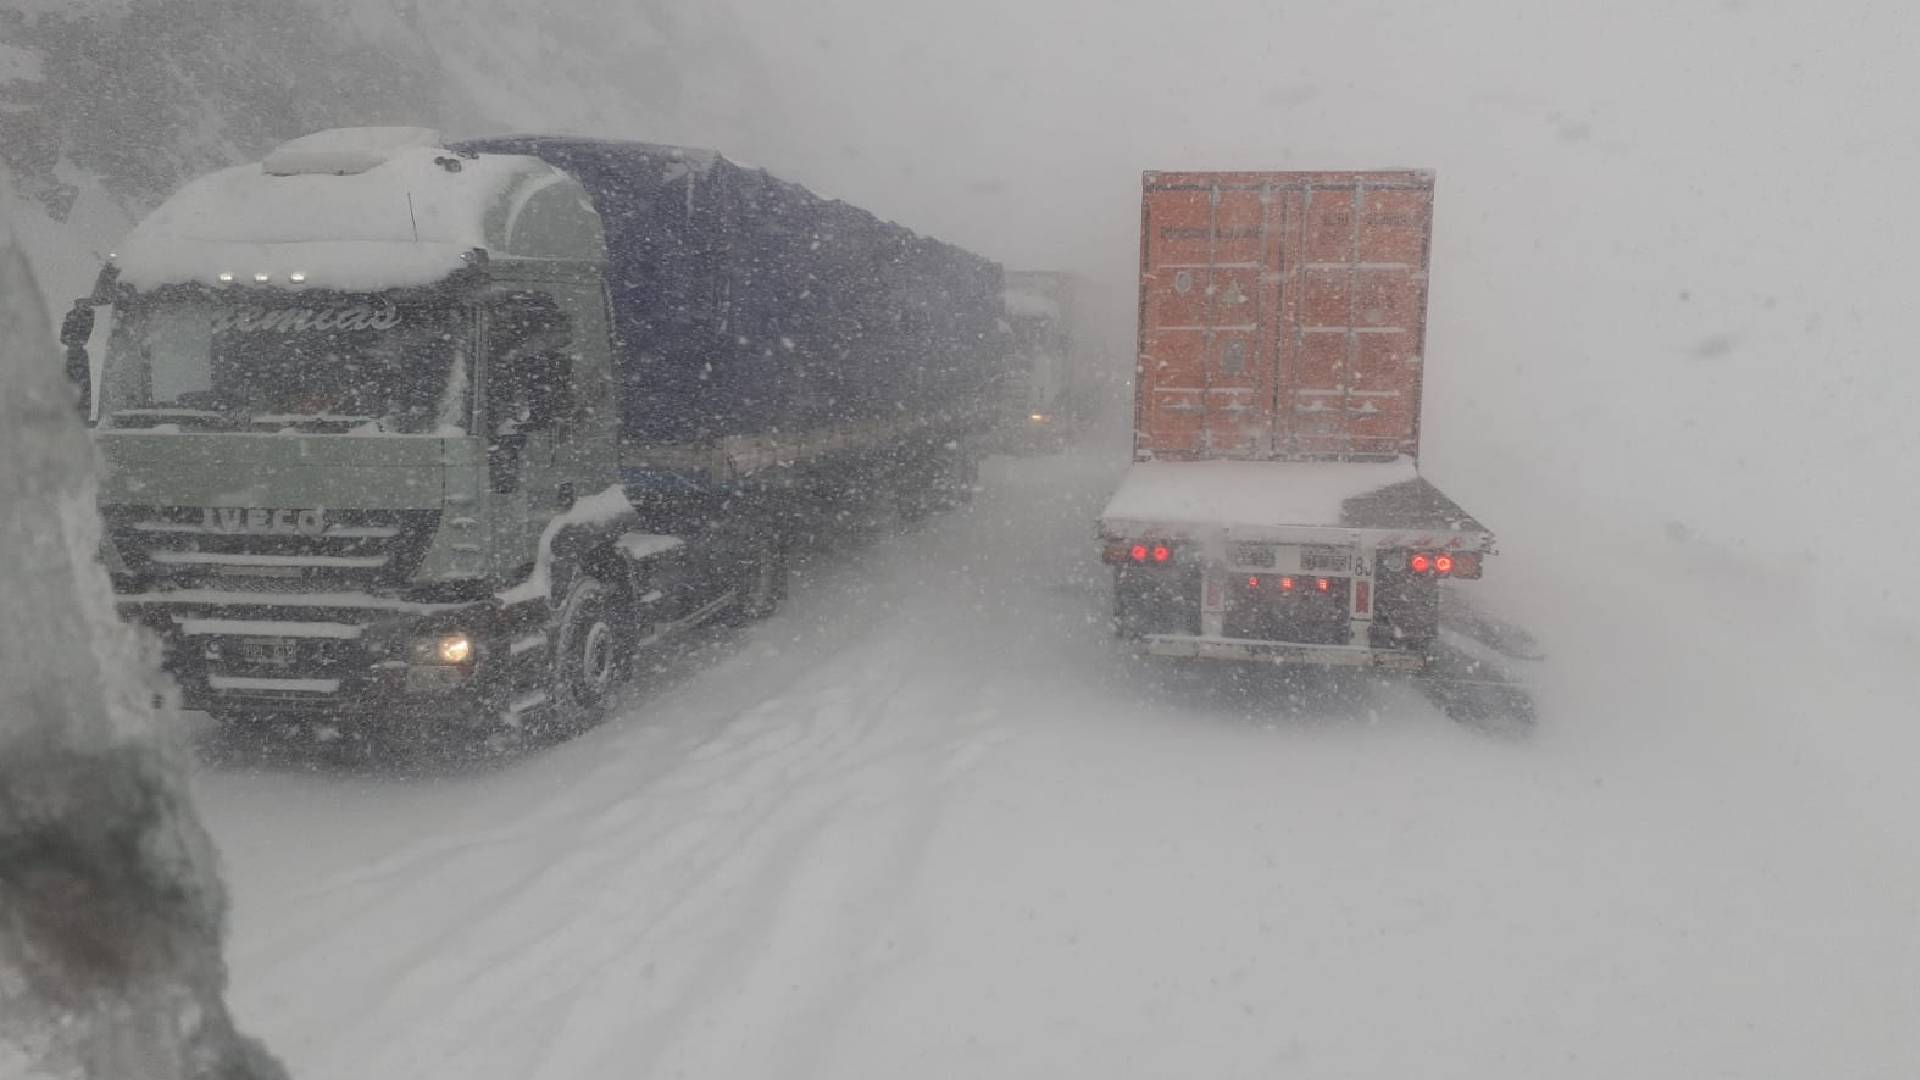 Camiones varados por el temporal de nieve. Fuente: Asociación de Propietarios de Camiones de Mendoza